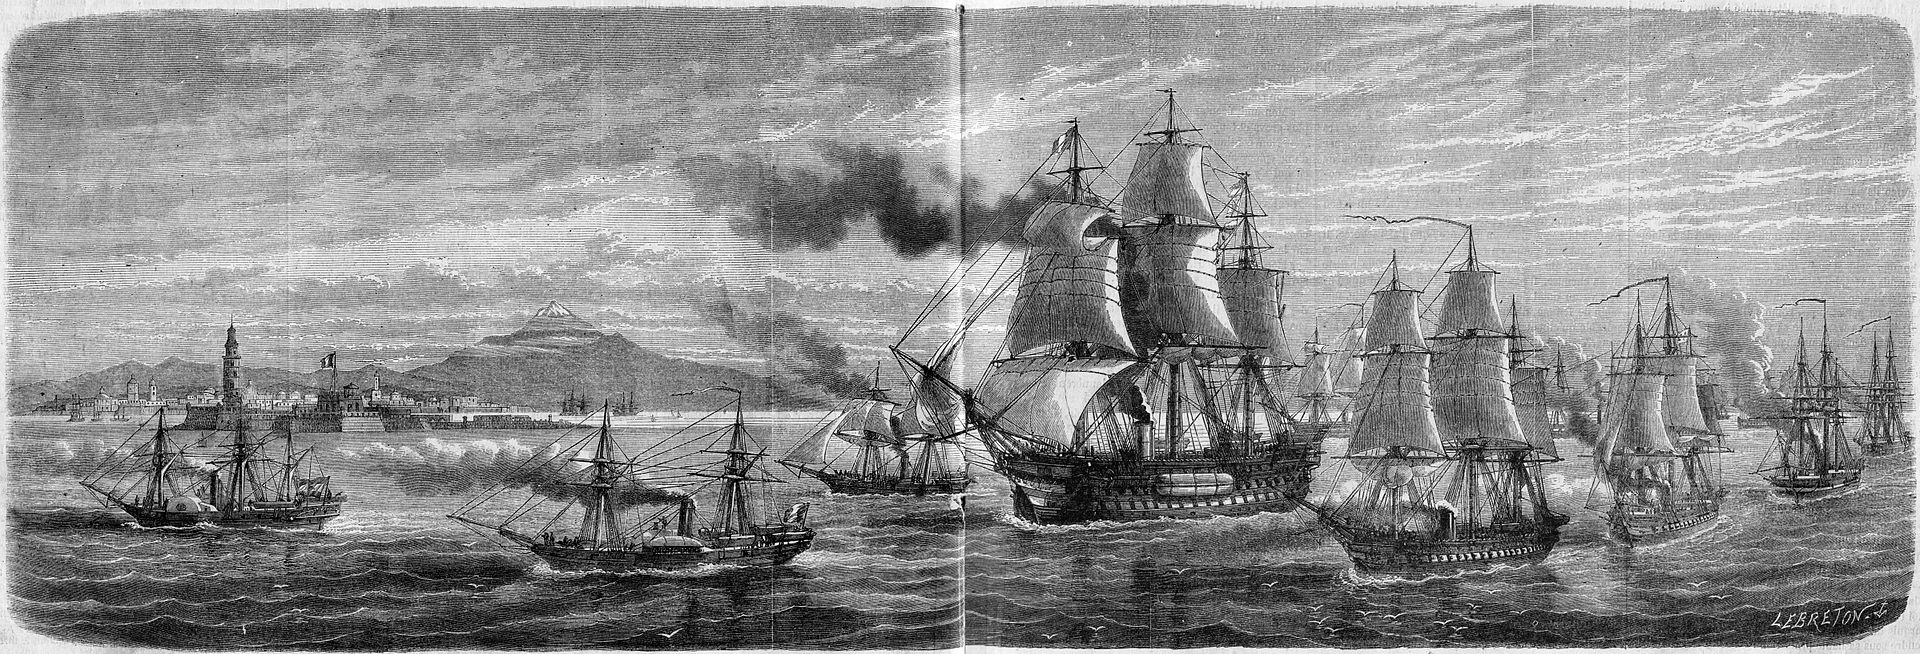 MEX Armada franaçise LIllustration 1862 CDT Jurien de la Gravière